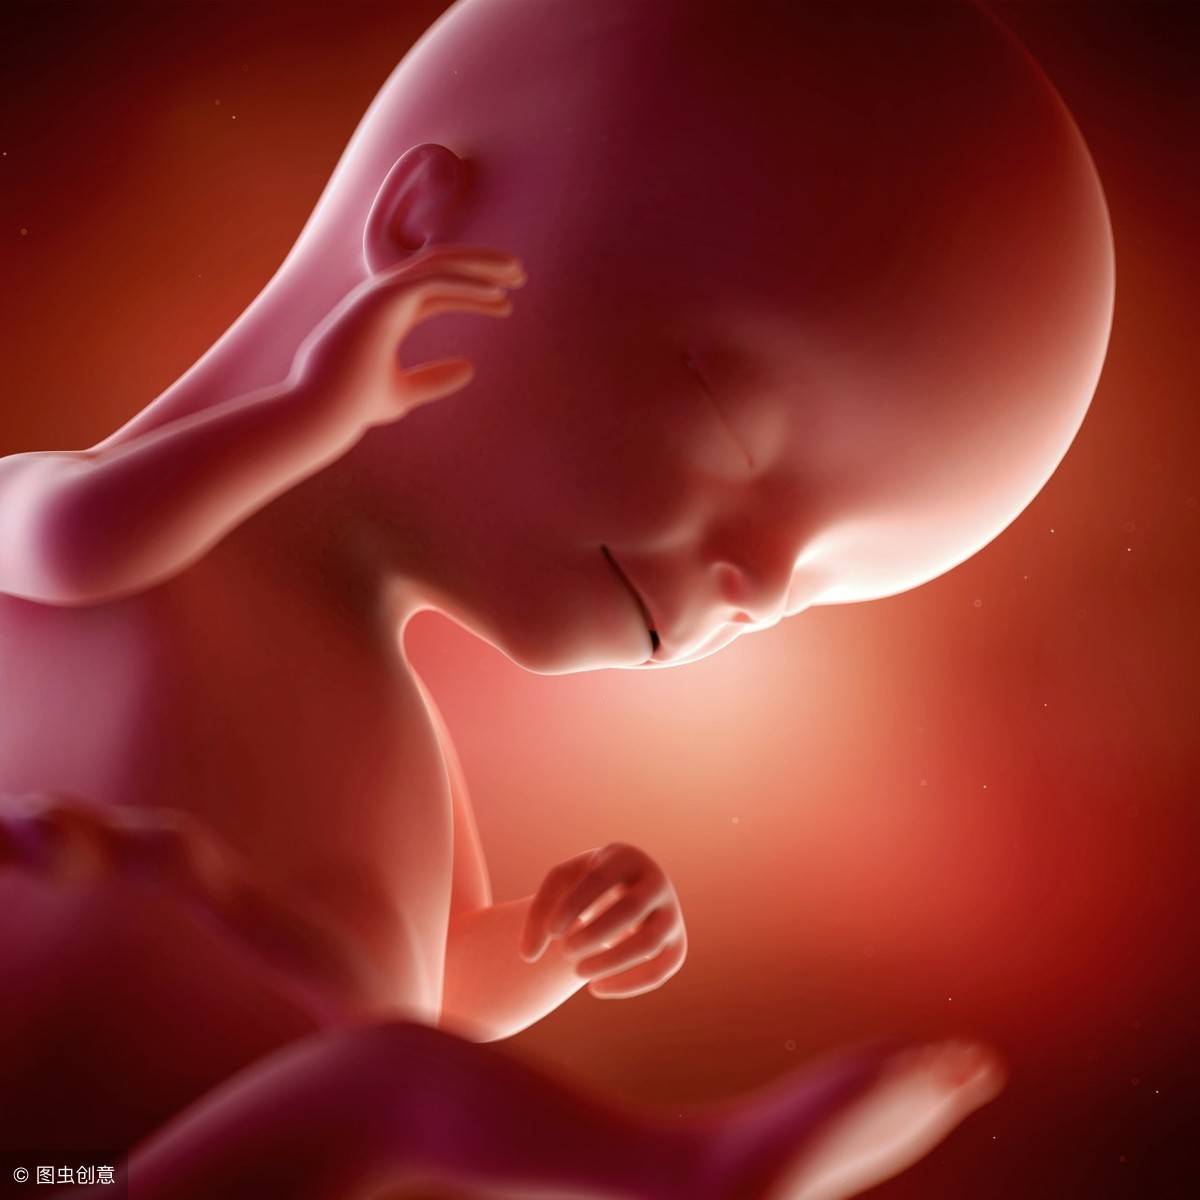 怀孕1-40周完整详细的胎儿发育过程图 - 知乎